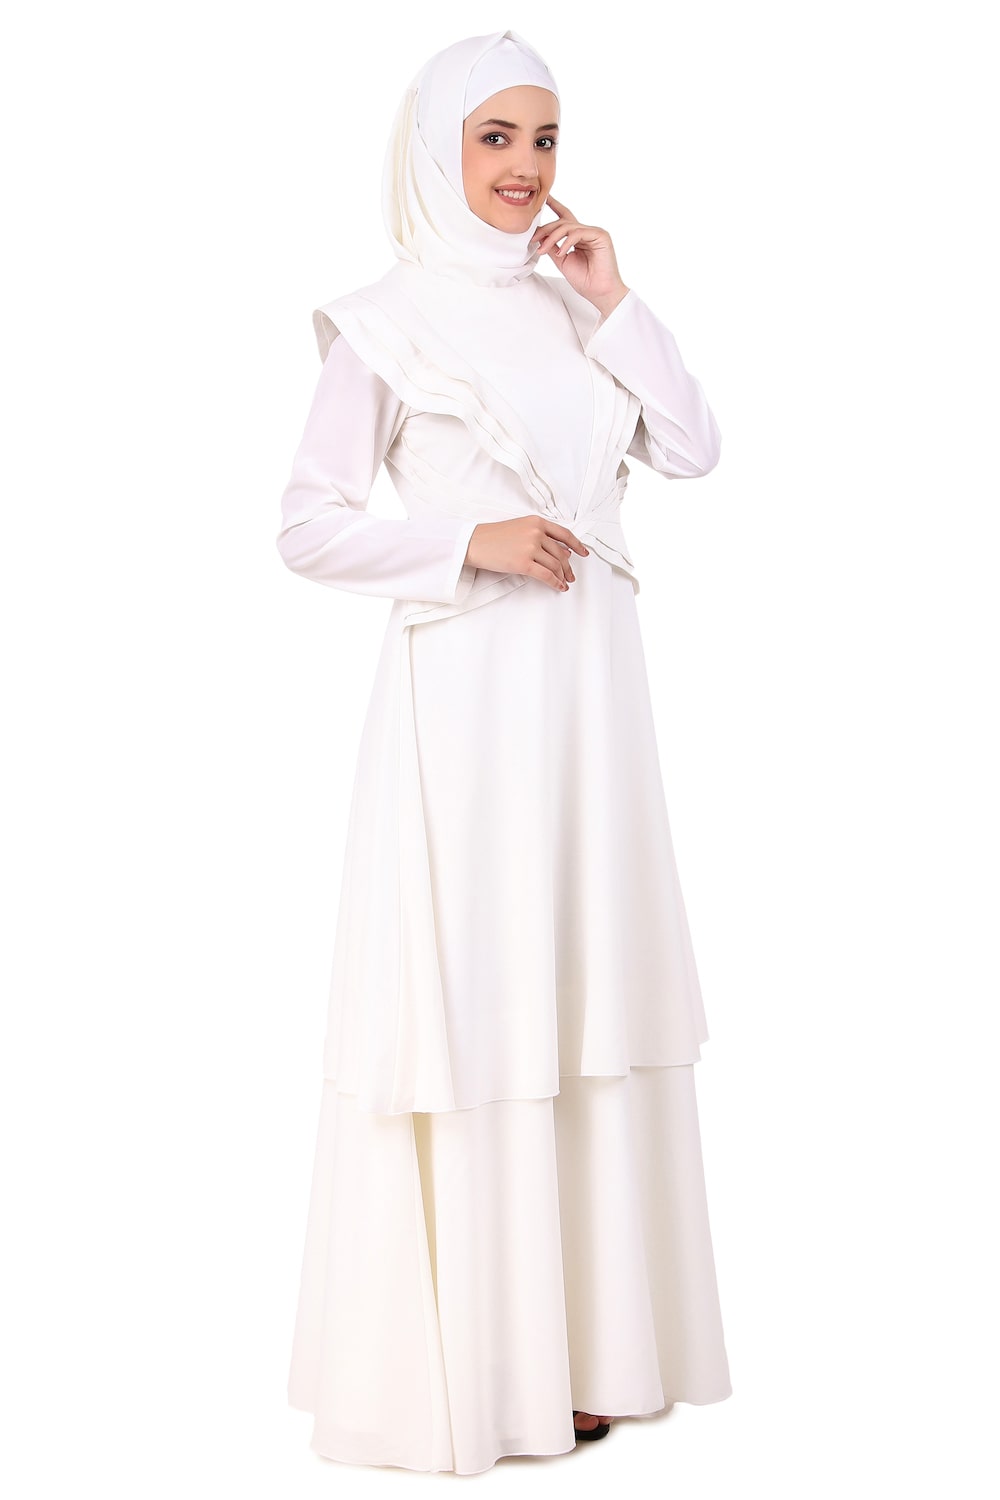 Designer Royal Look White Abaya